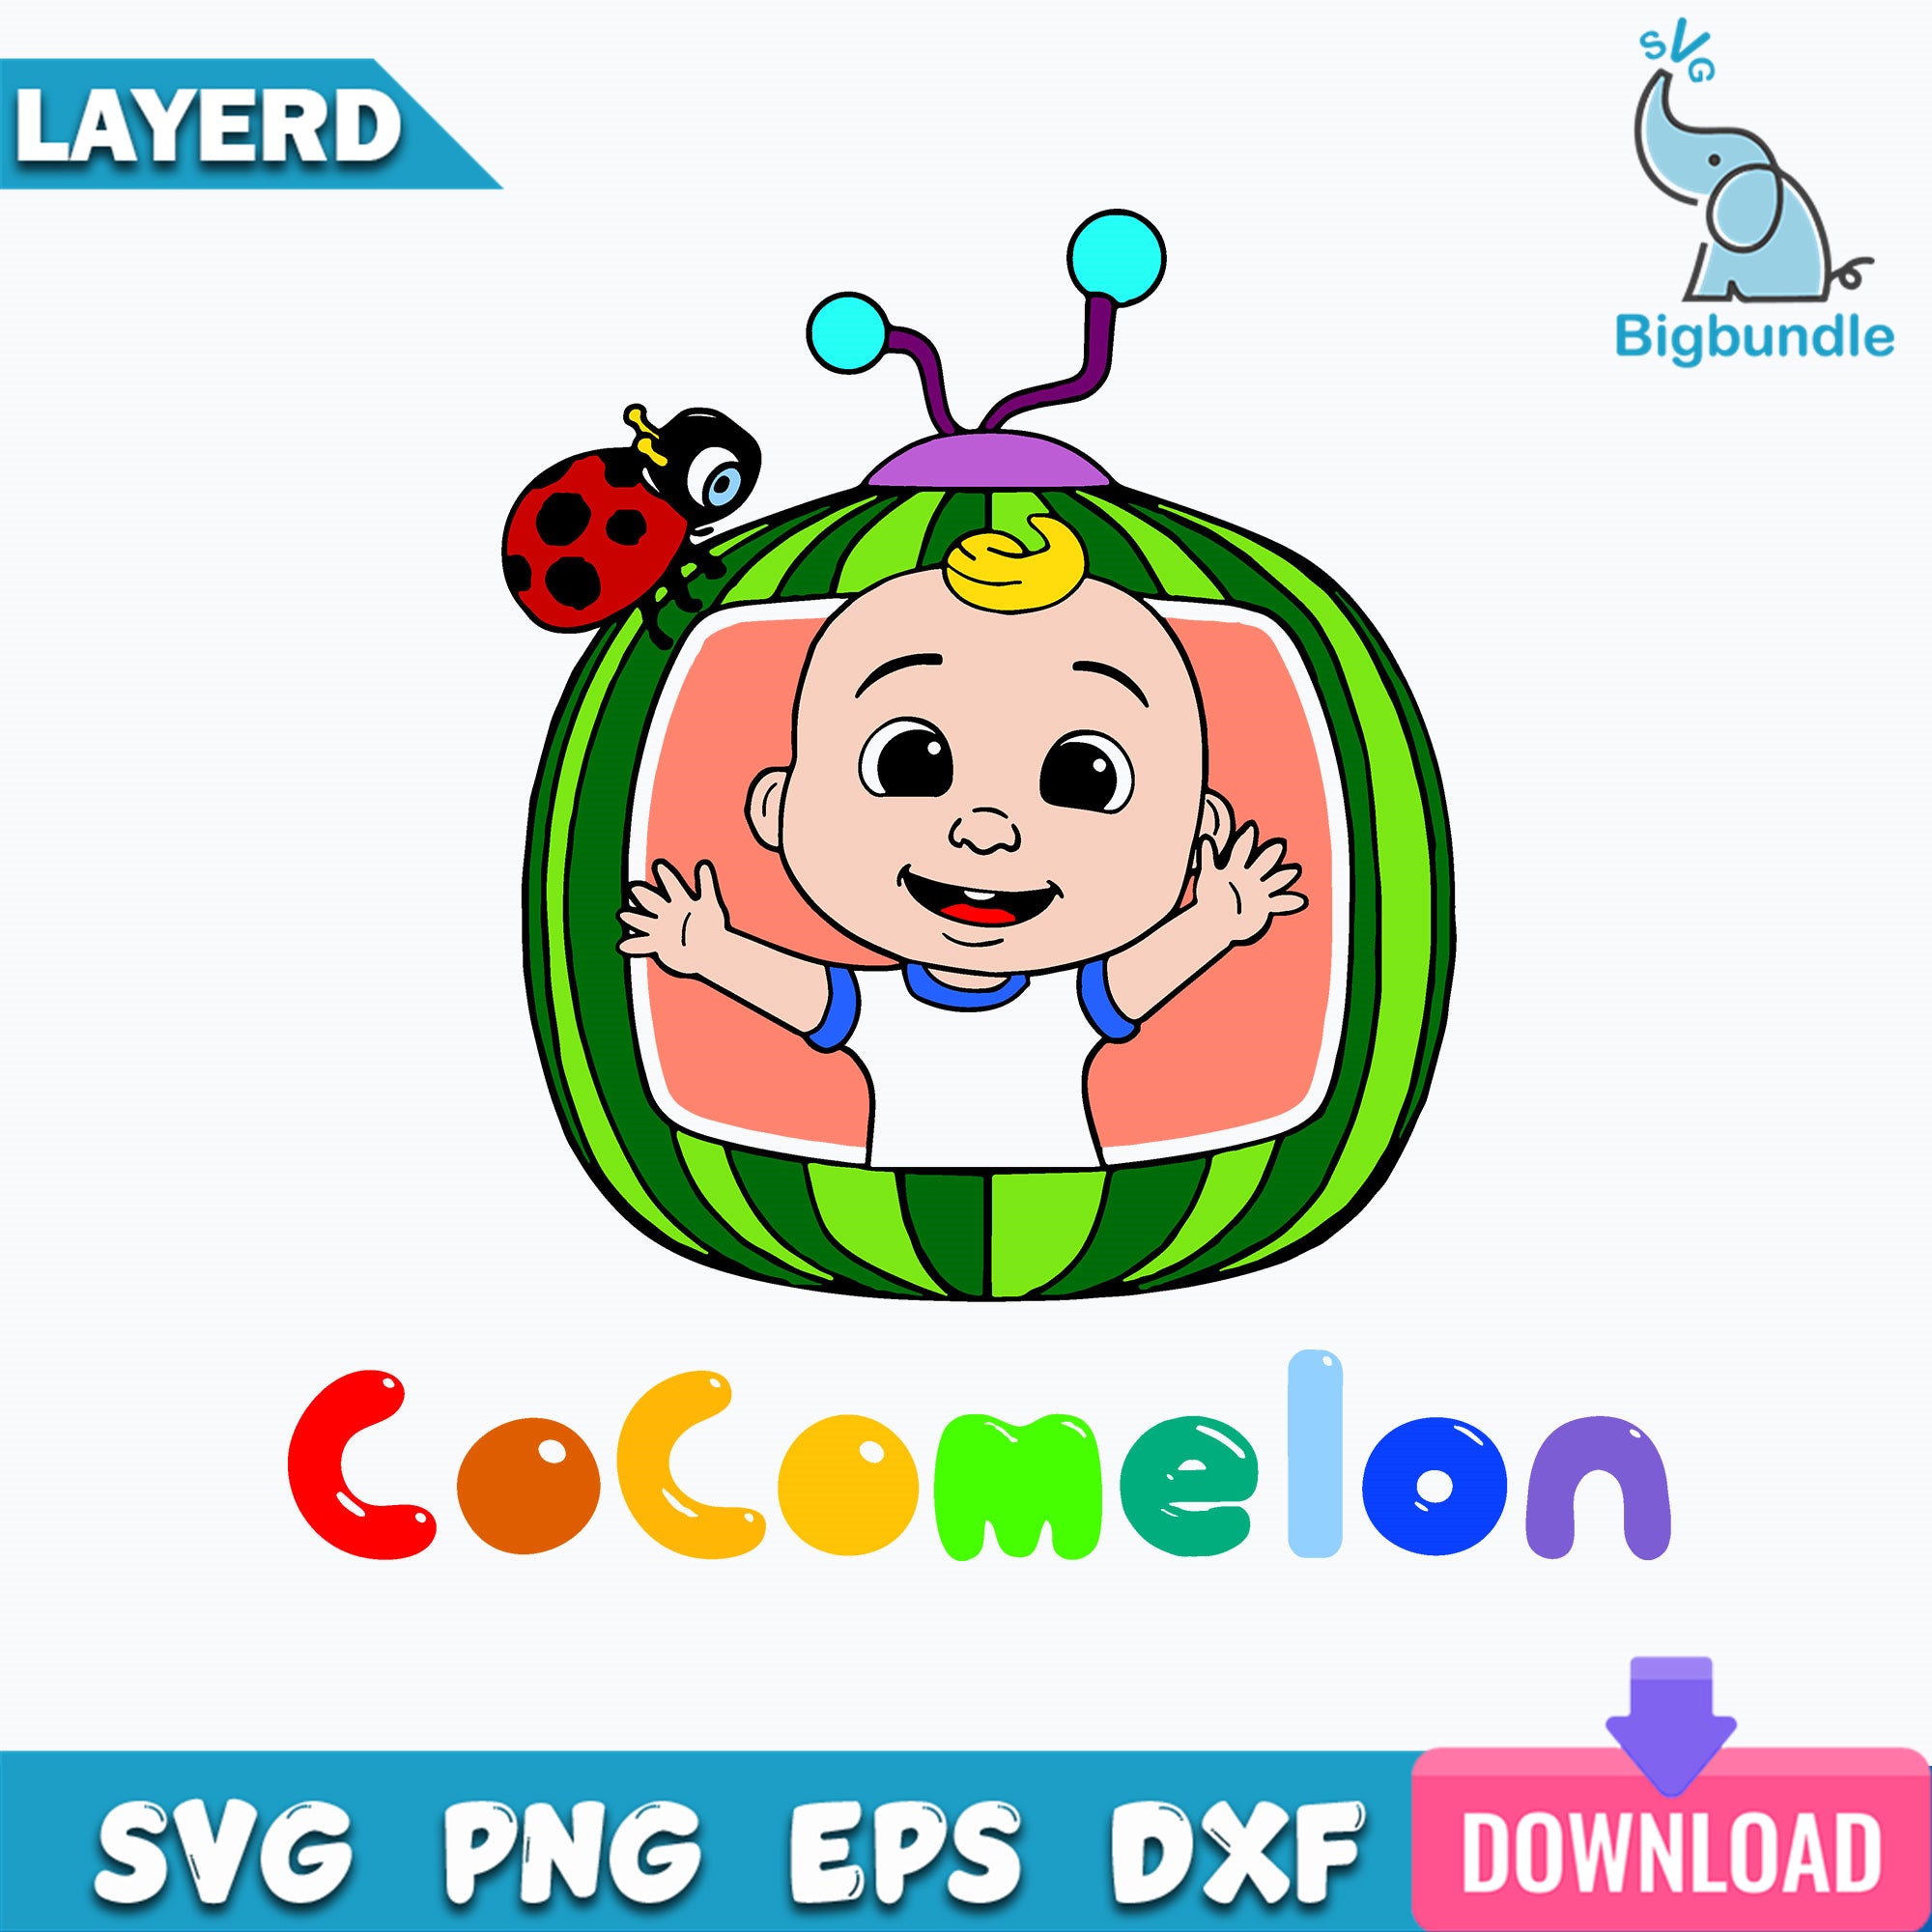 Cocomelon SVG, Cocomelon JJ SVG, Cocomelon Cut Files